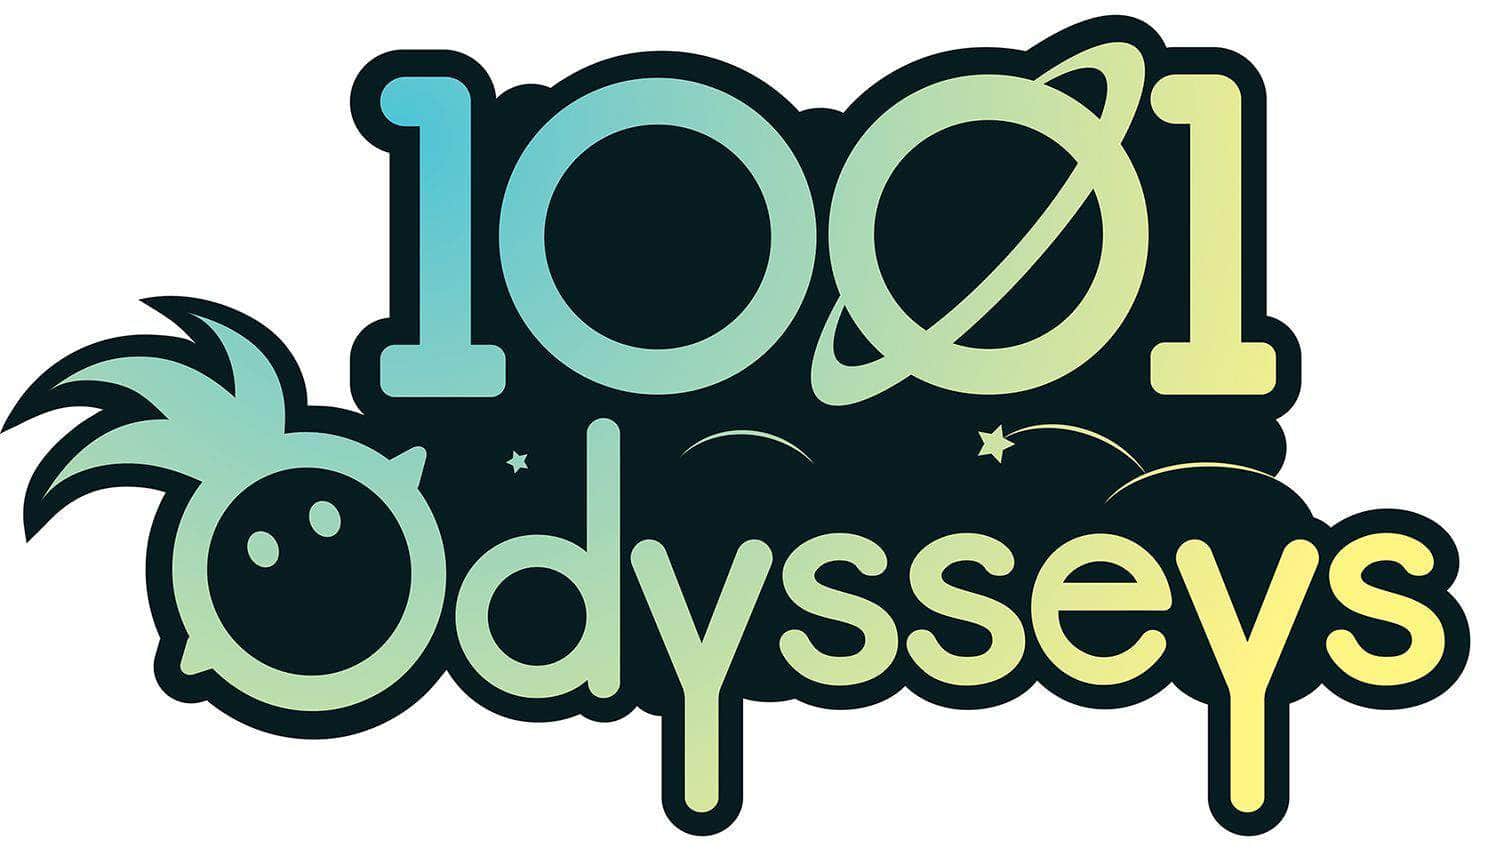 1001 ODYSSEYS (Kickstarter Special) jogo de tabuleiro Kickstarter Asmadi Games KS800623A